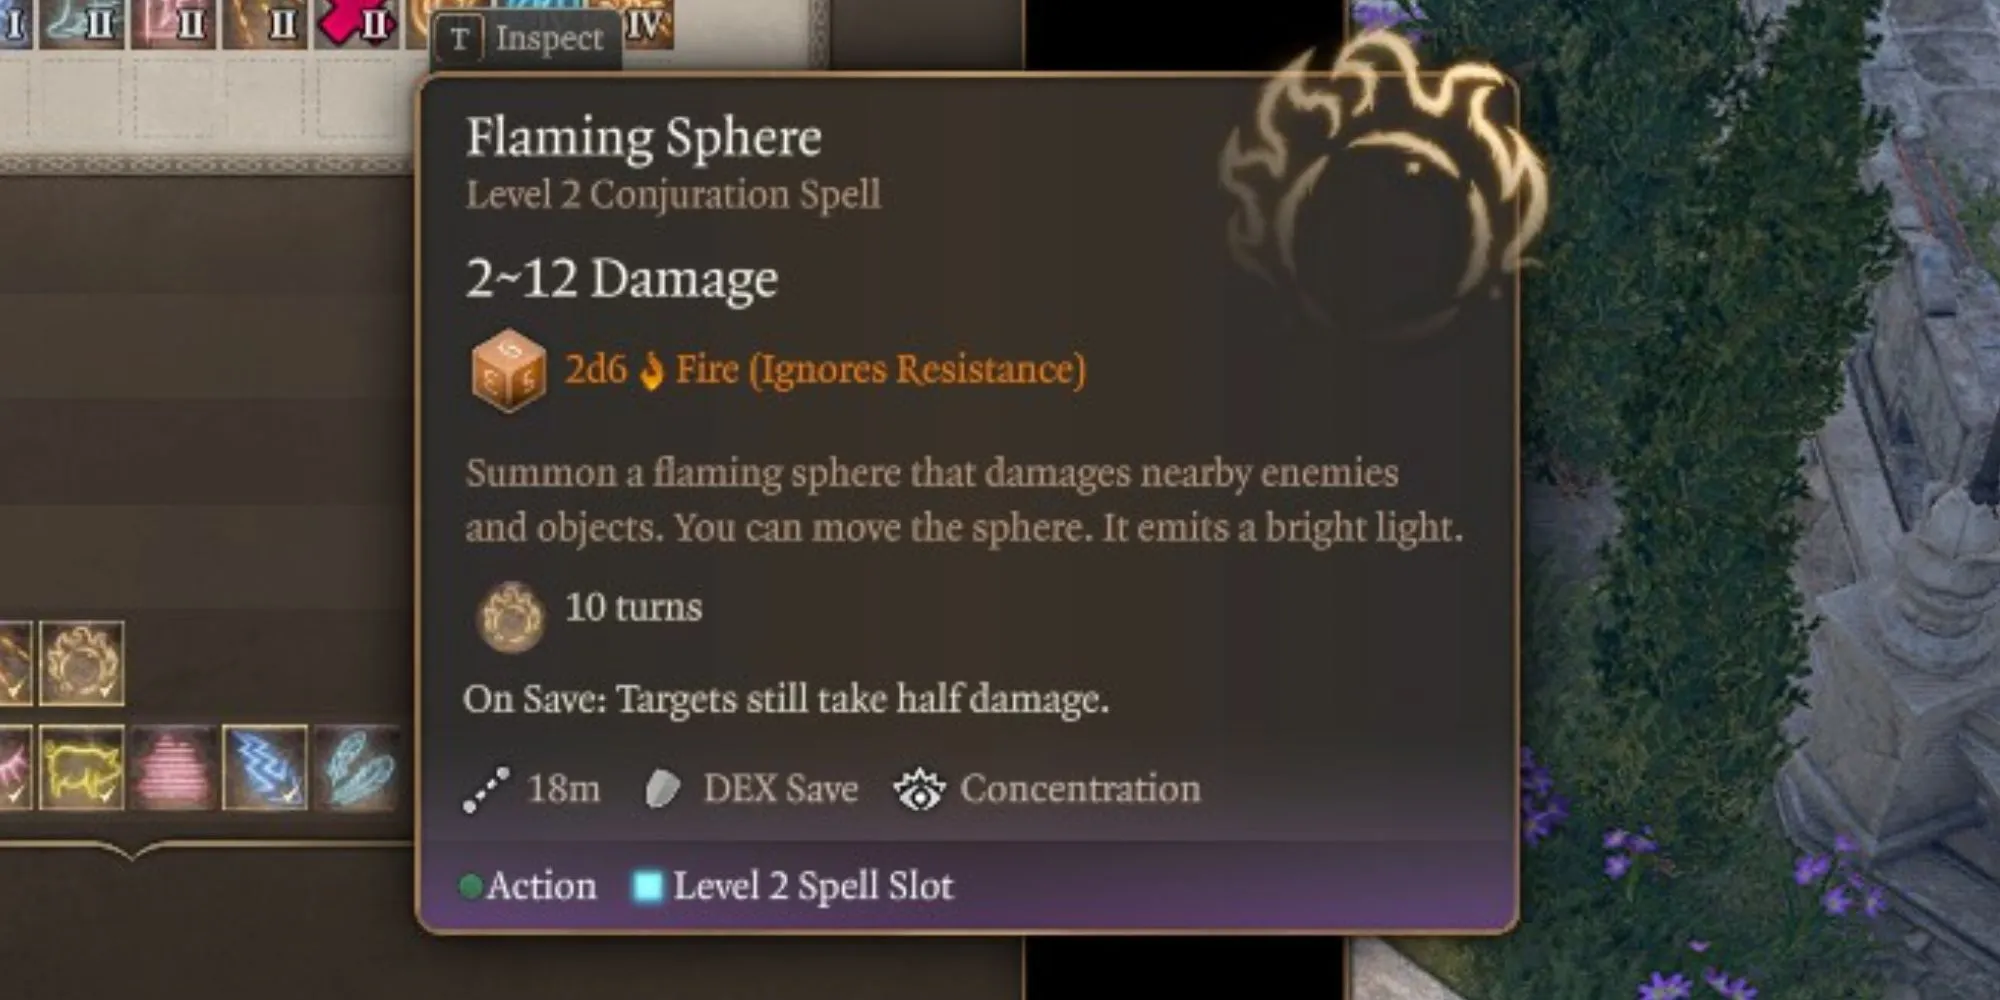 The Flaming Sphere spell in Baldur’s Gate 3